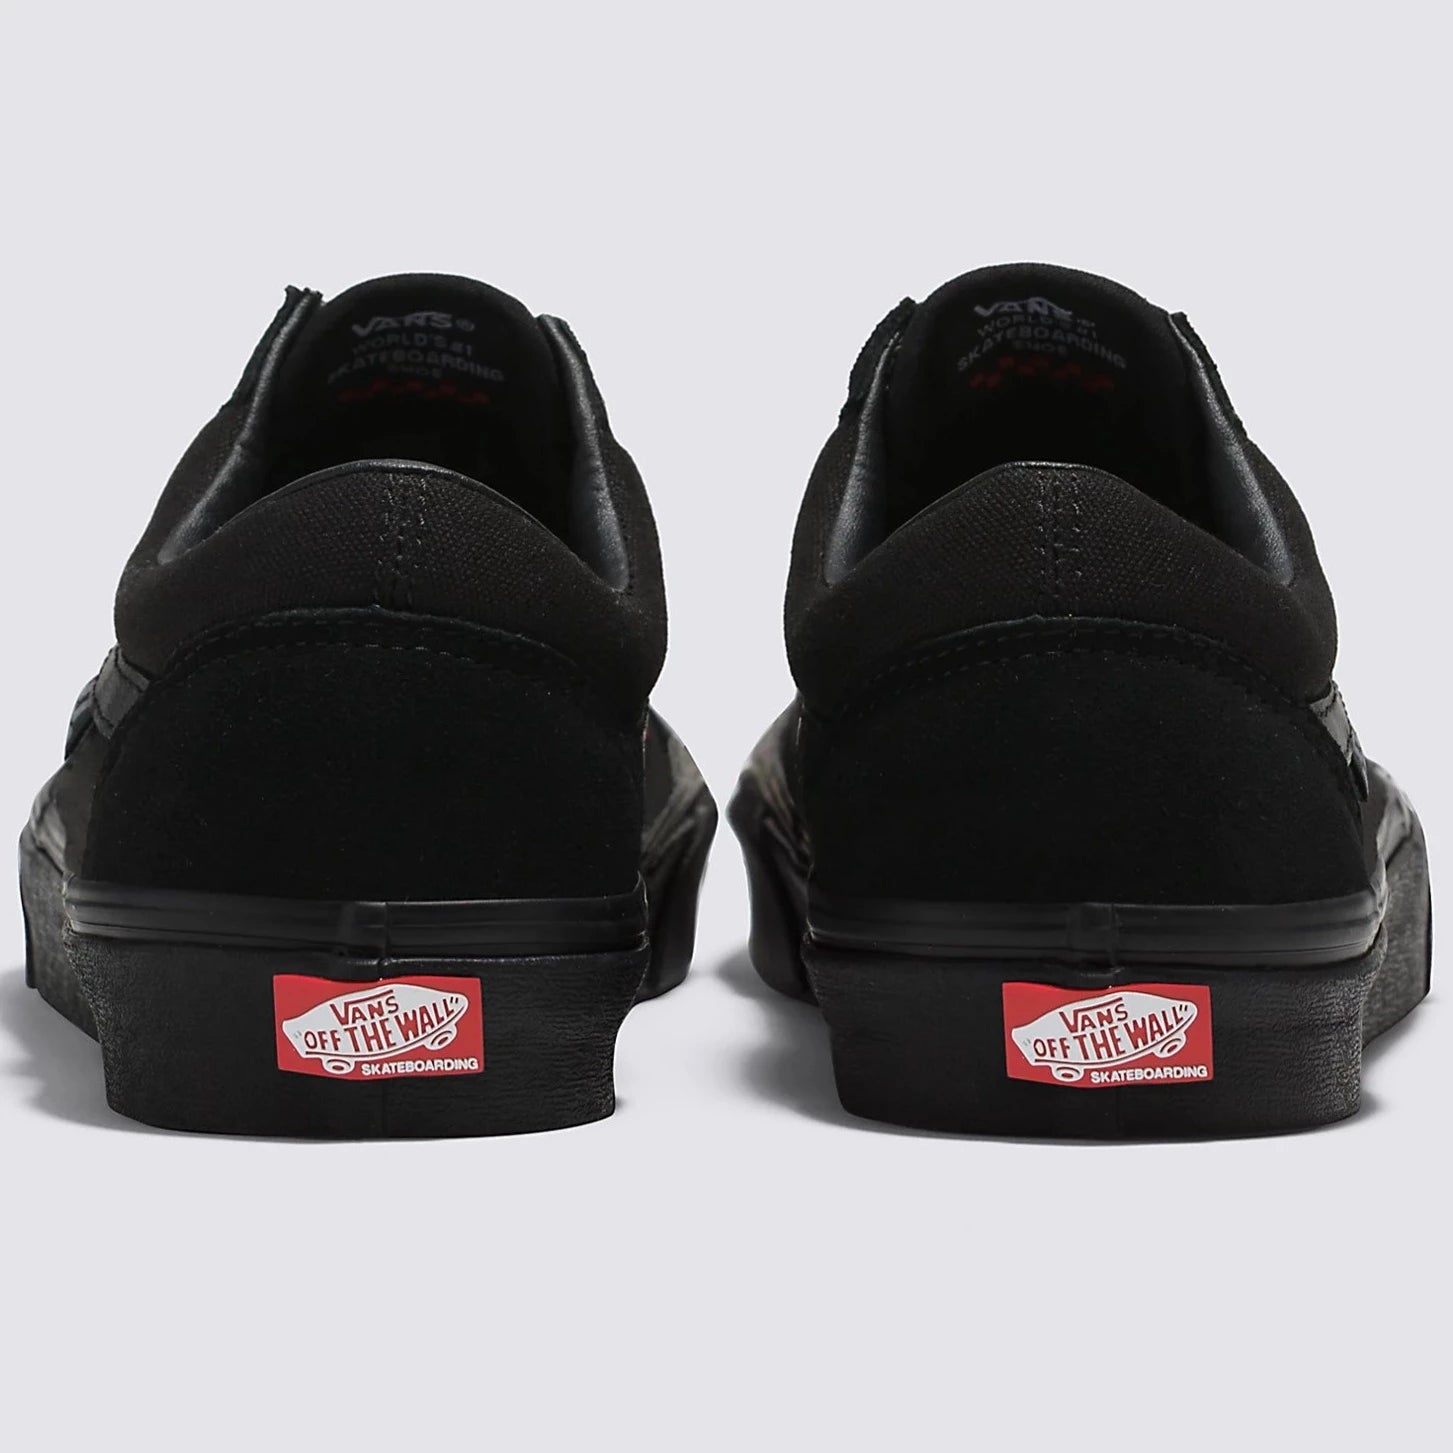 Black/Black Vans Skate Old Skool Skate Shoes Back